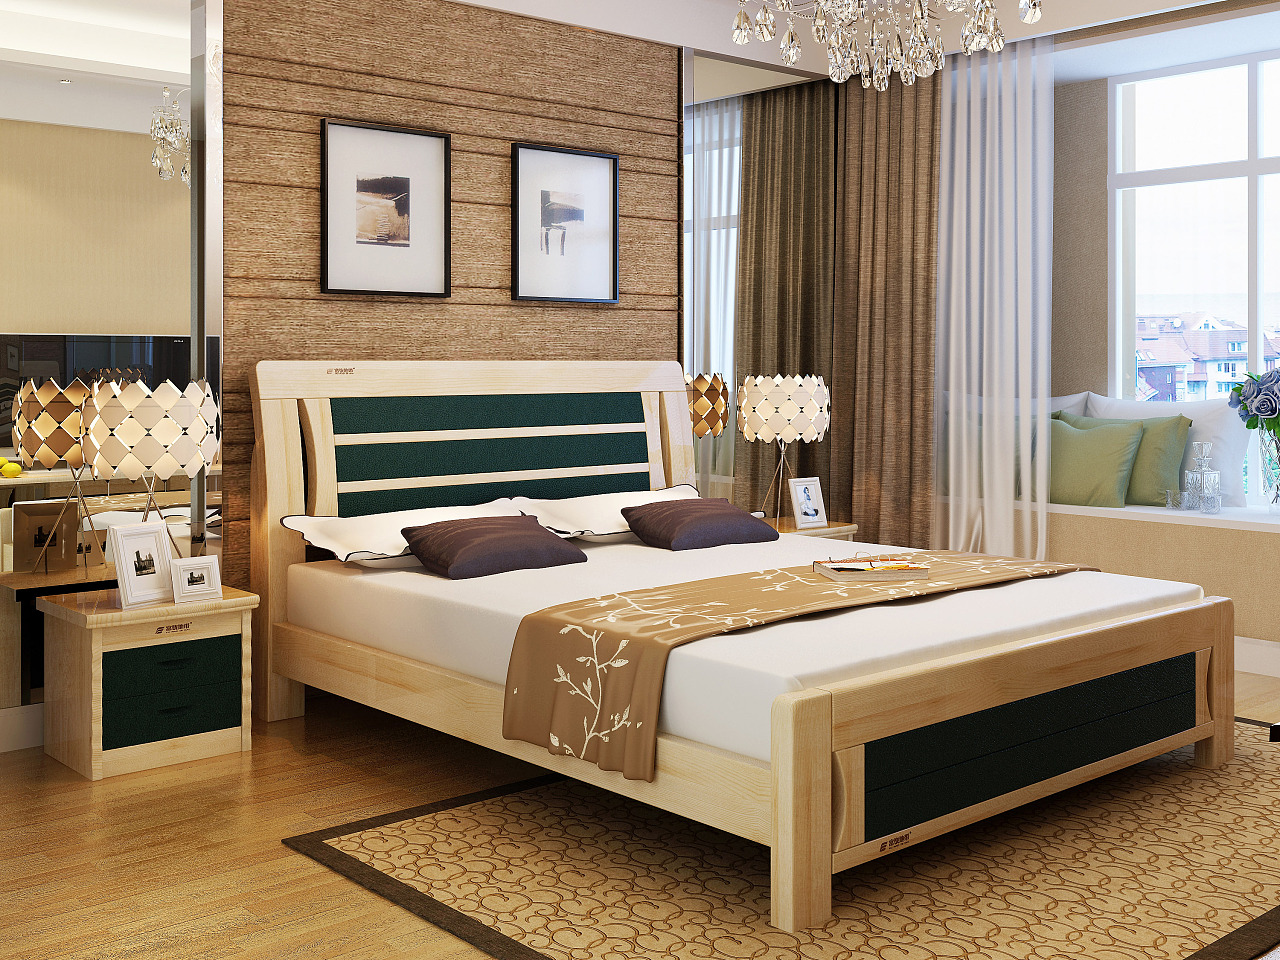 美式卧室实木床图片1装修图-土巴兔装修效果图